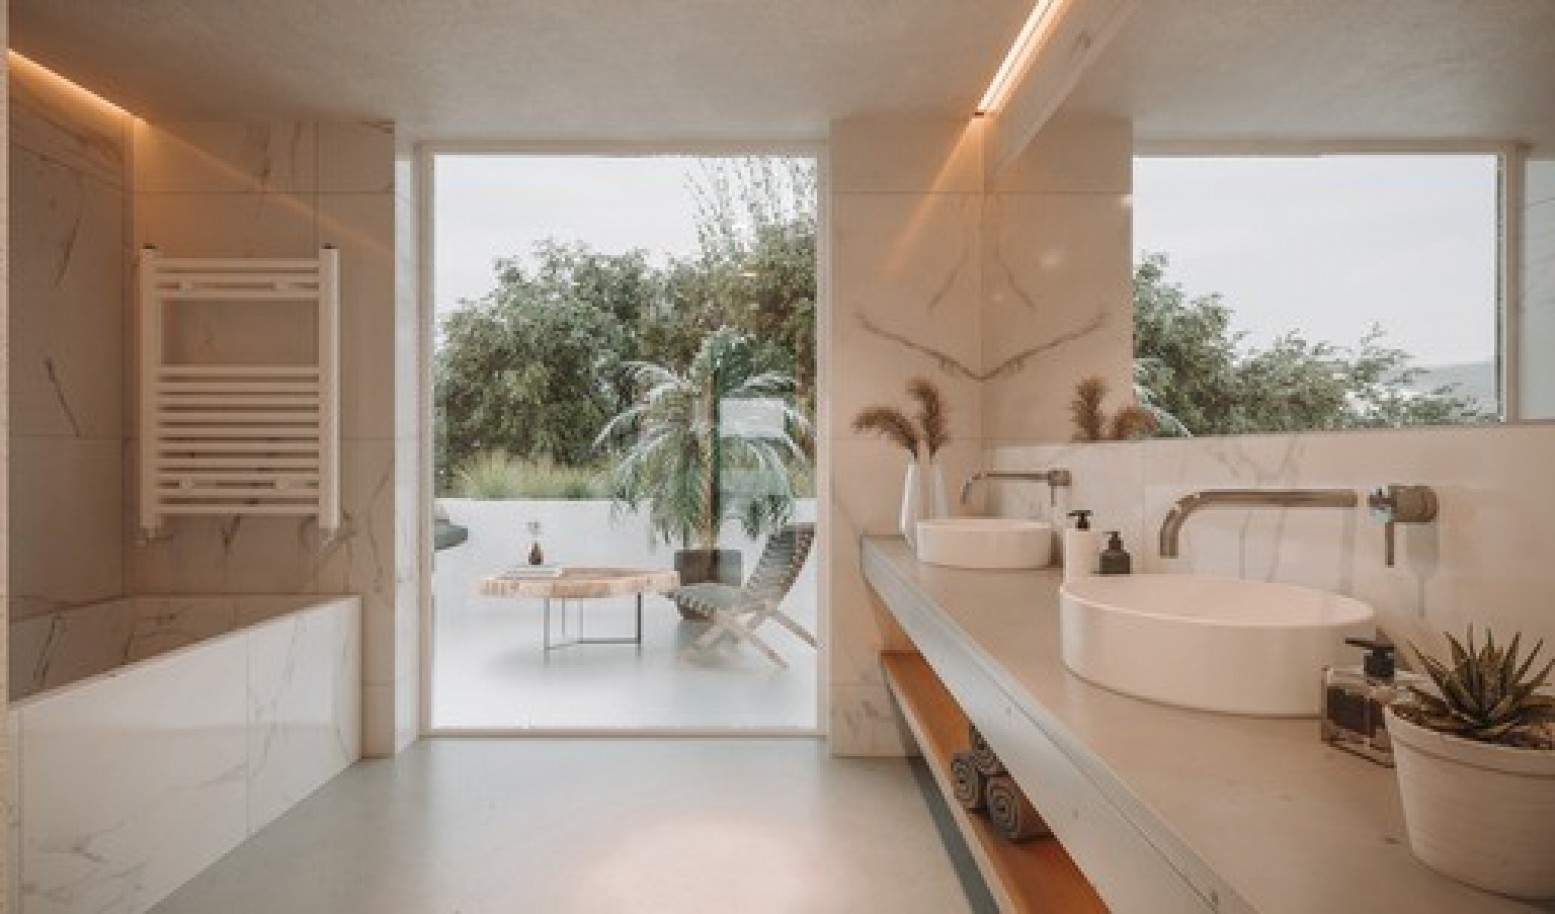 Villa de 4 dormitorios en construcción, en venta en Lagos, Algarve_208668